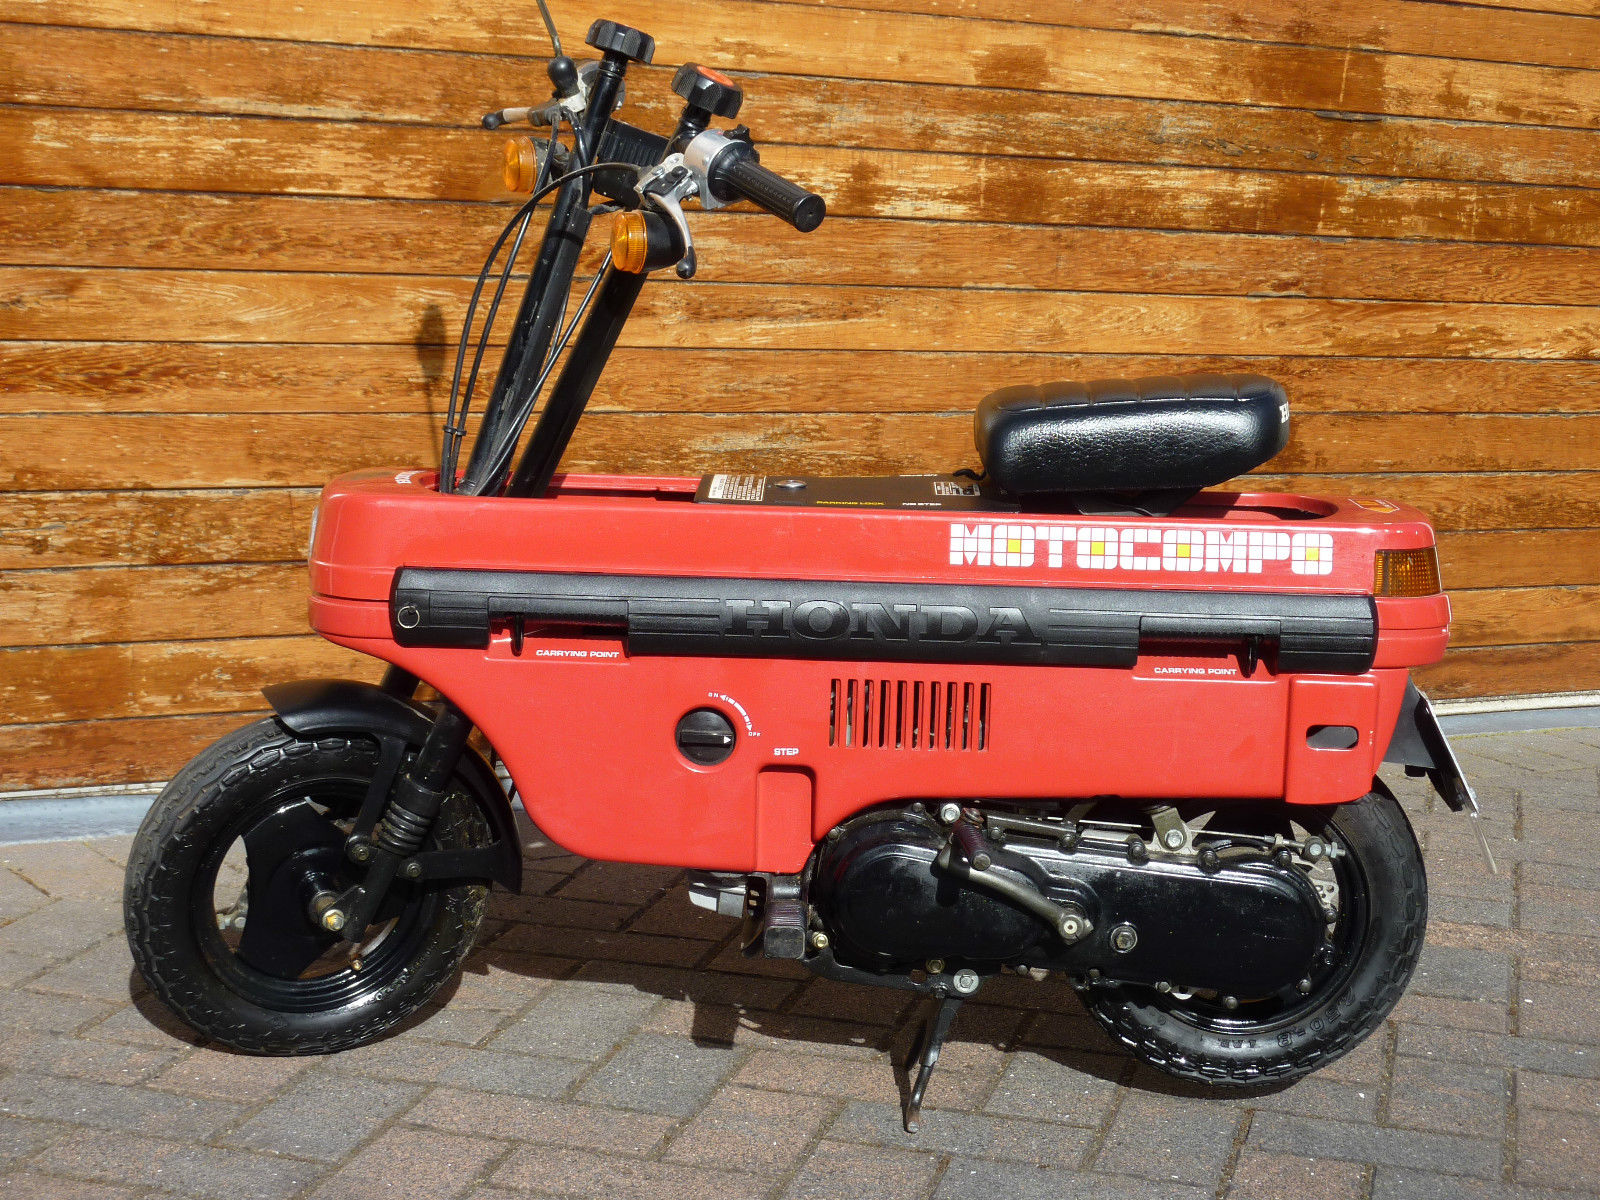 1982 Honda Motocompo L Side Ride - Classic Sport Bikes For Sale